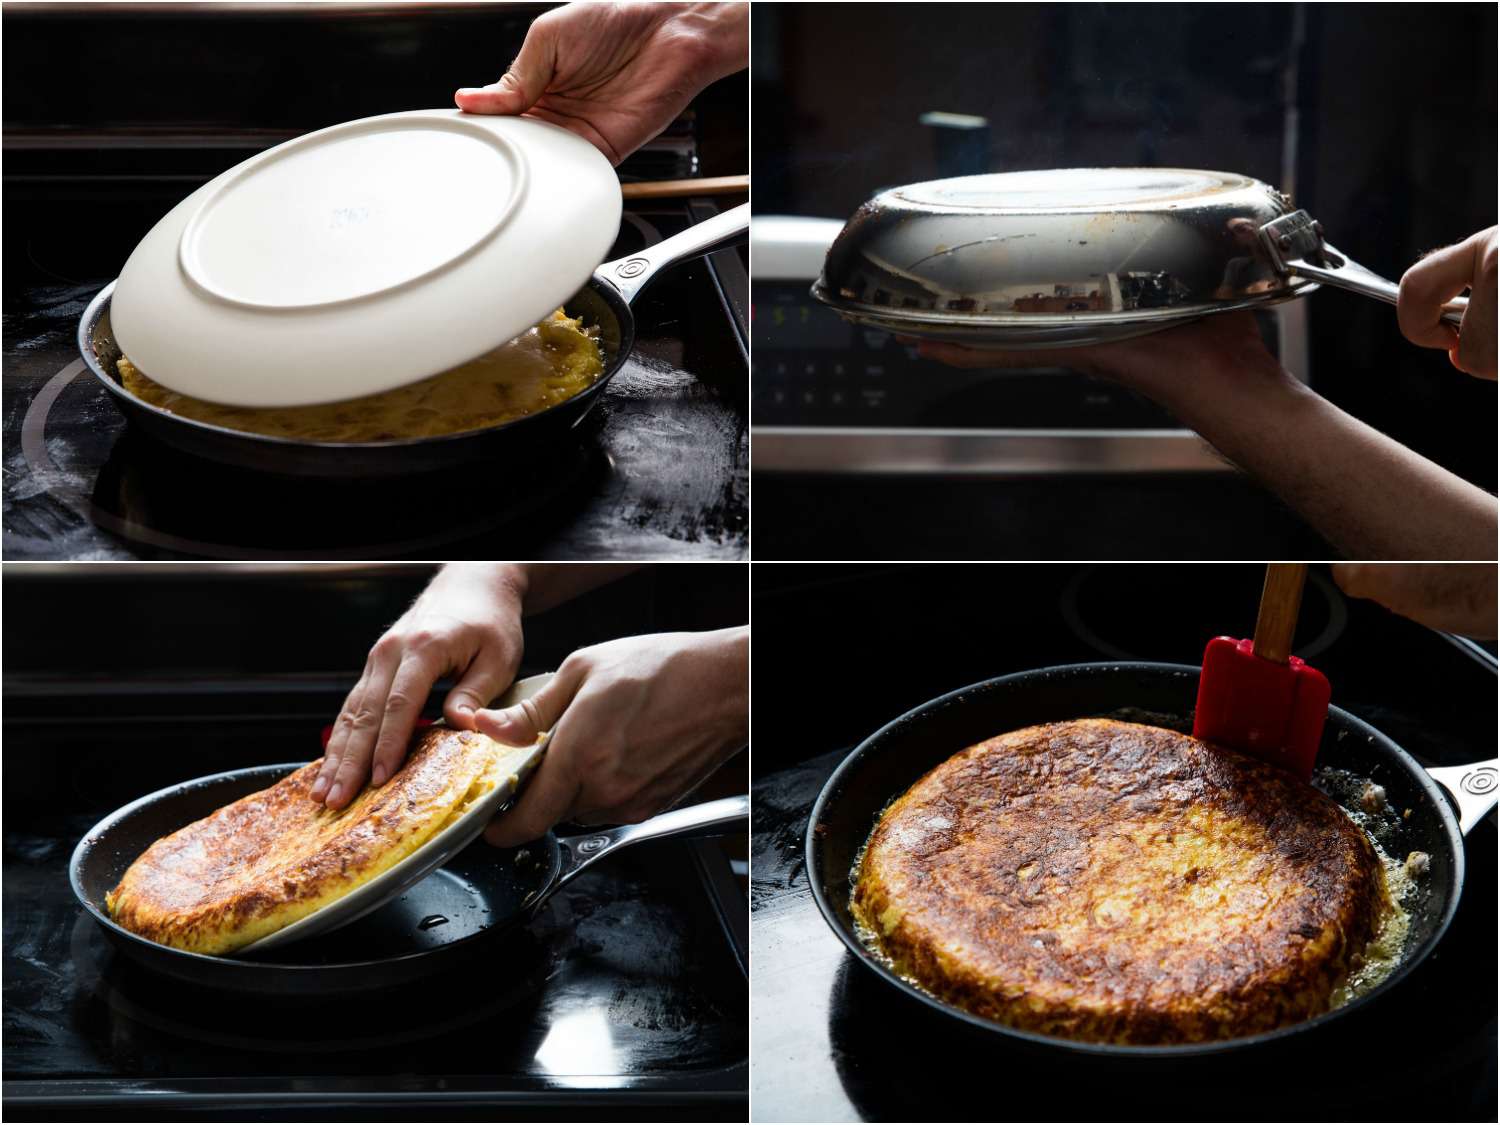 四张拼贴图片展示如何翻玉米饼española。用盘子盖上玉米饼，迅速把锅倒过来，这样玉米饼就在盘子上了。把煎锅重新加热，把玉米饼放进去。用硅胶刮刀重塑边缘。gydF4y2Ba